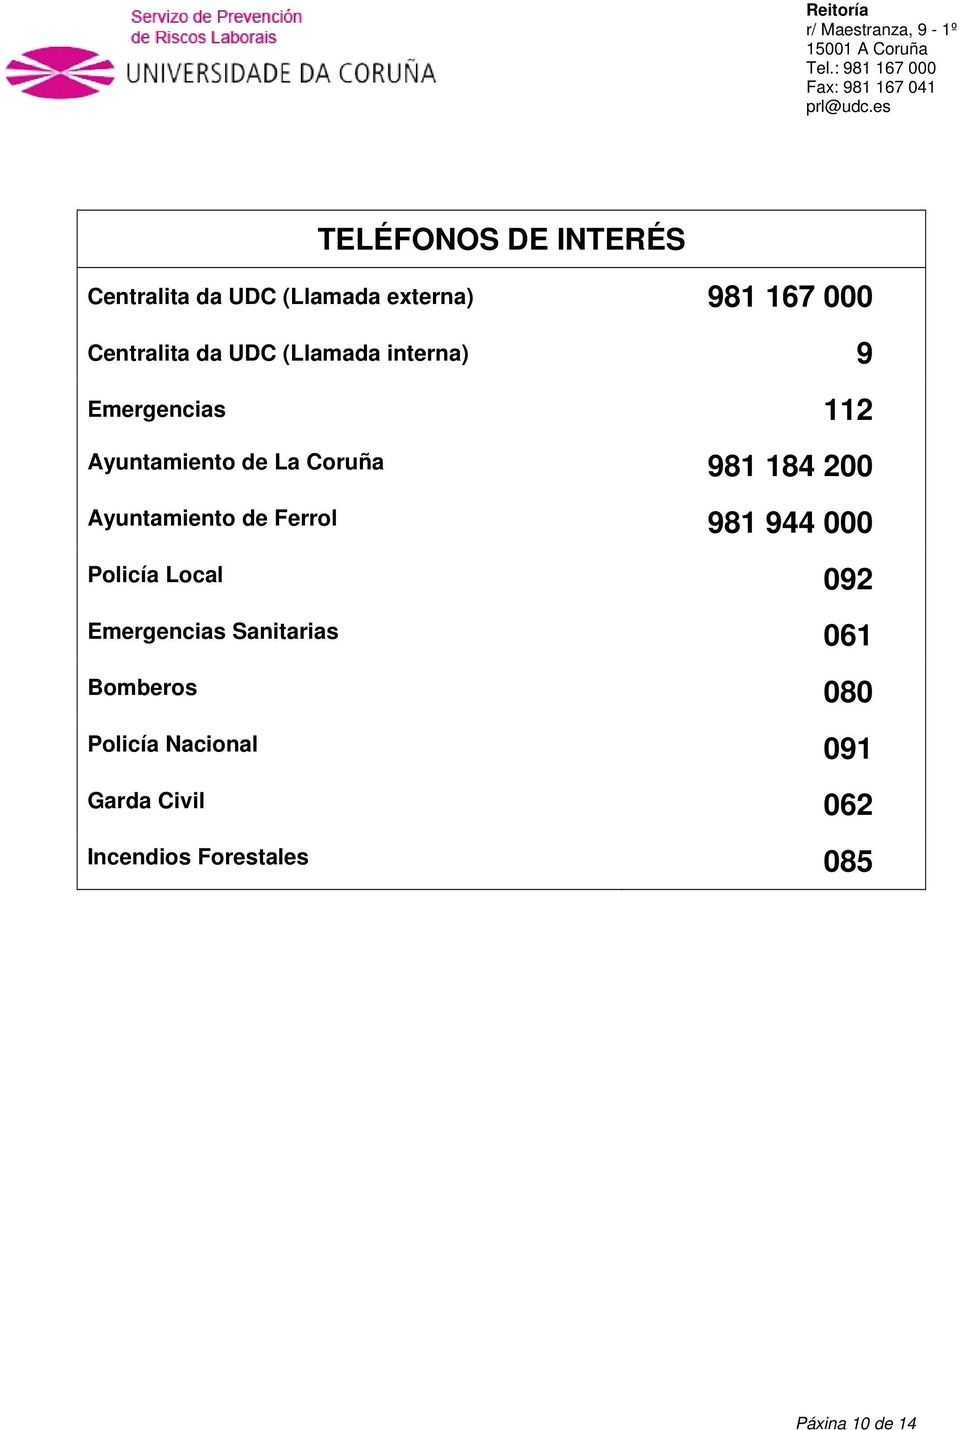 Ayuntamiento de Ferrol 981 944 000 Policía Local 092 Emergencias Sanitarias 061